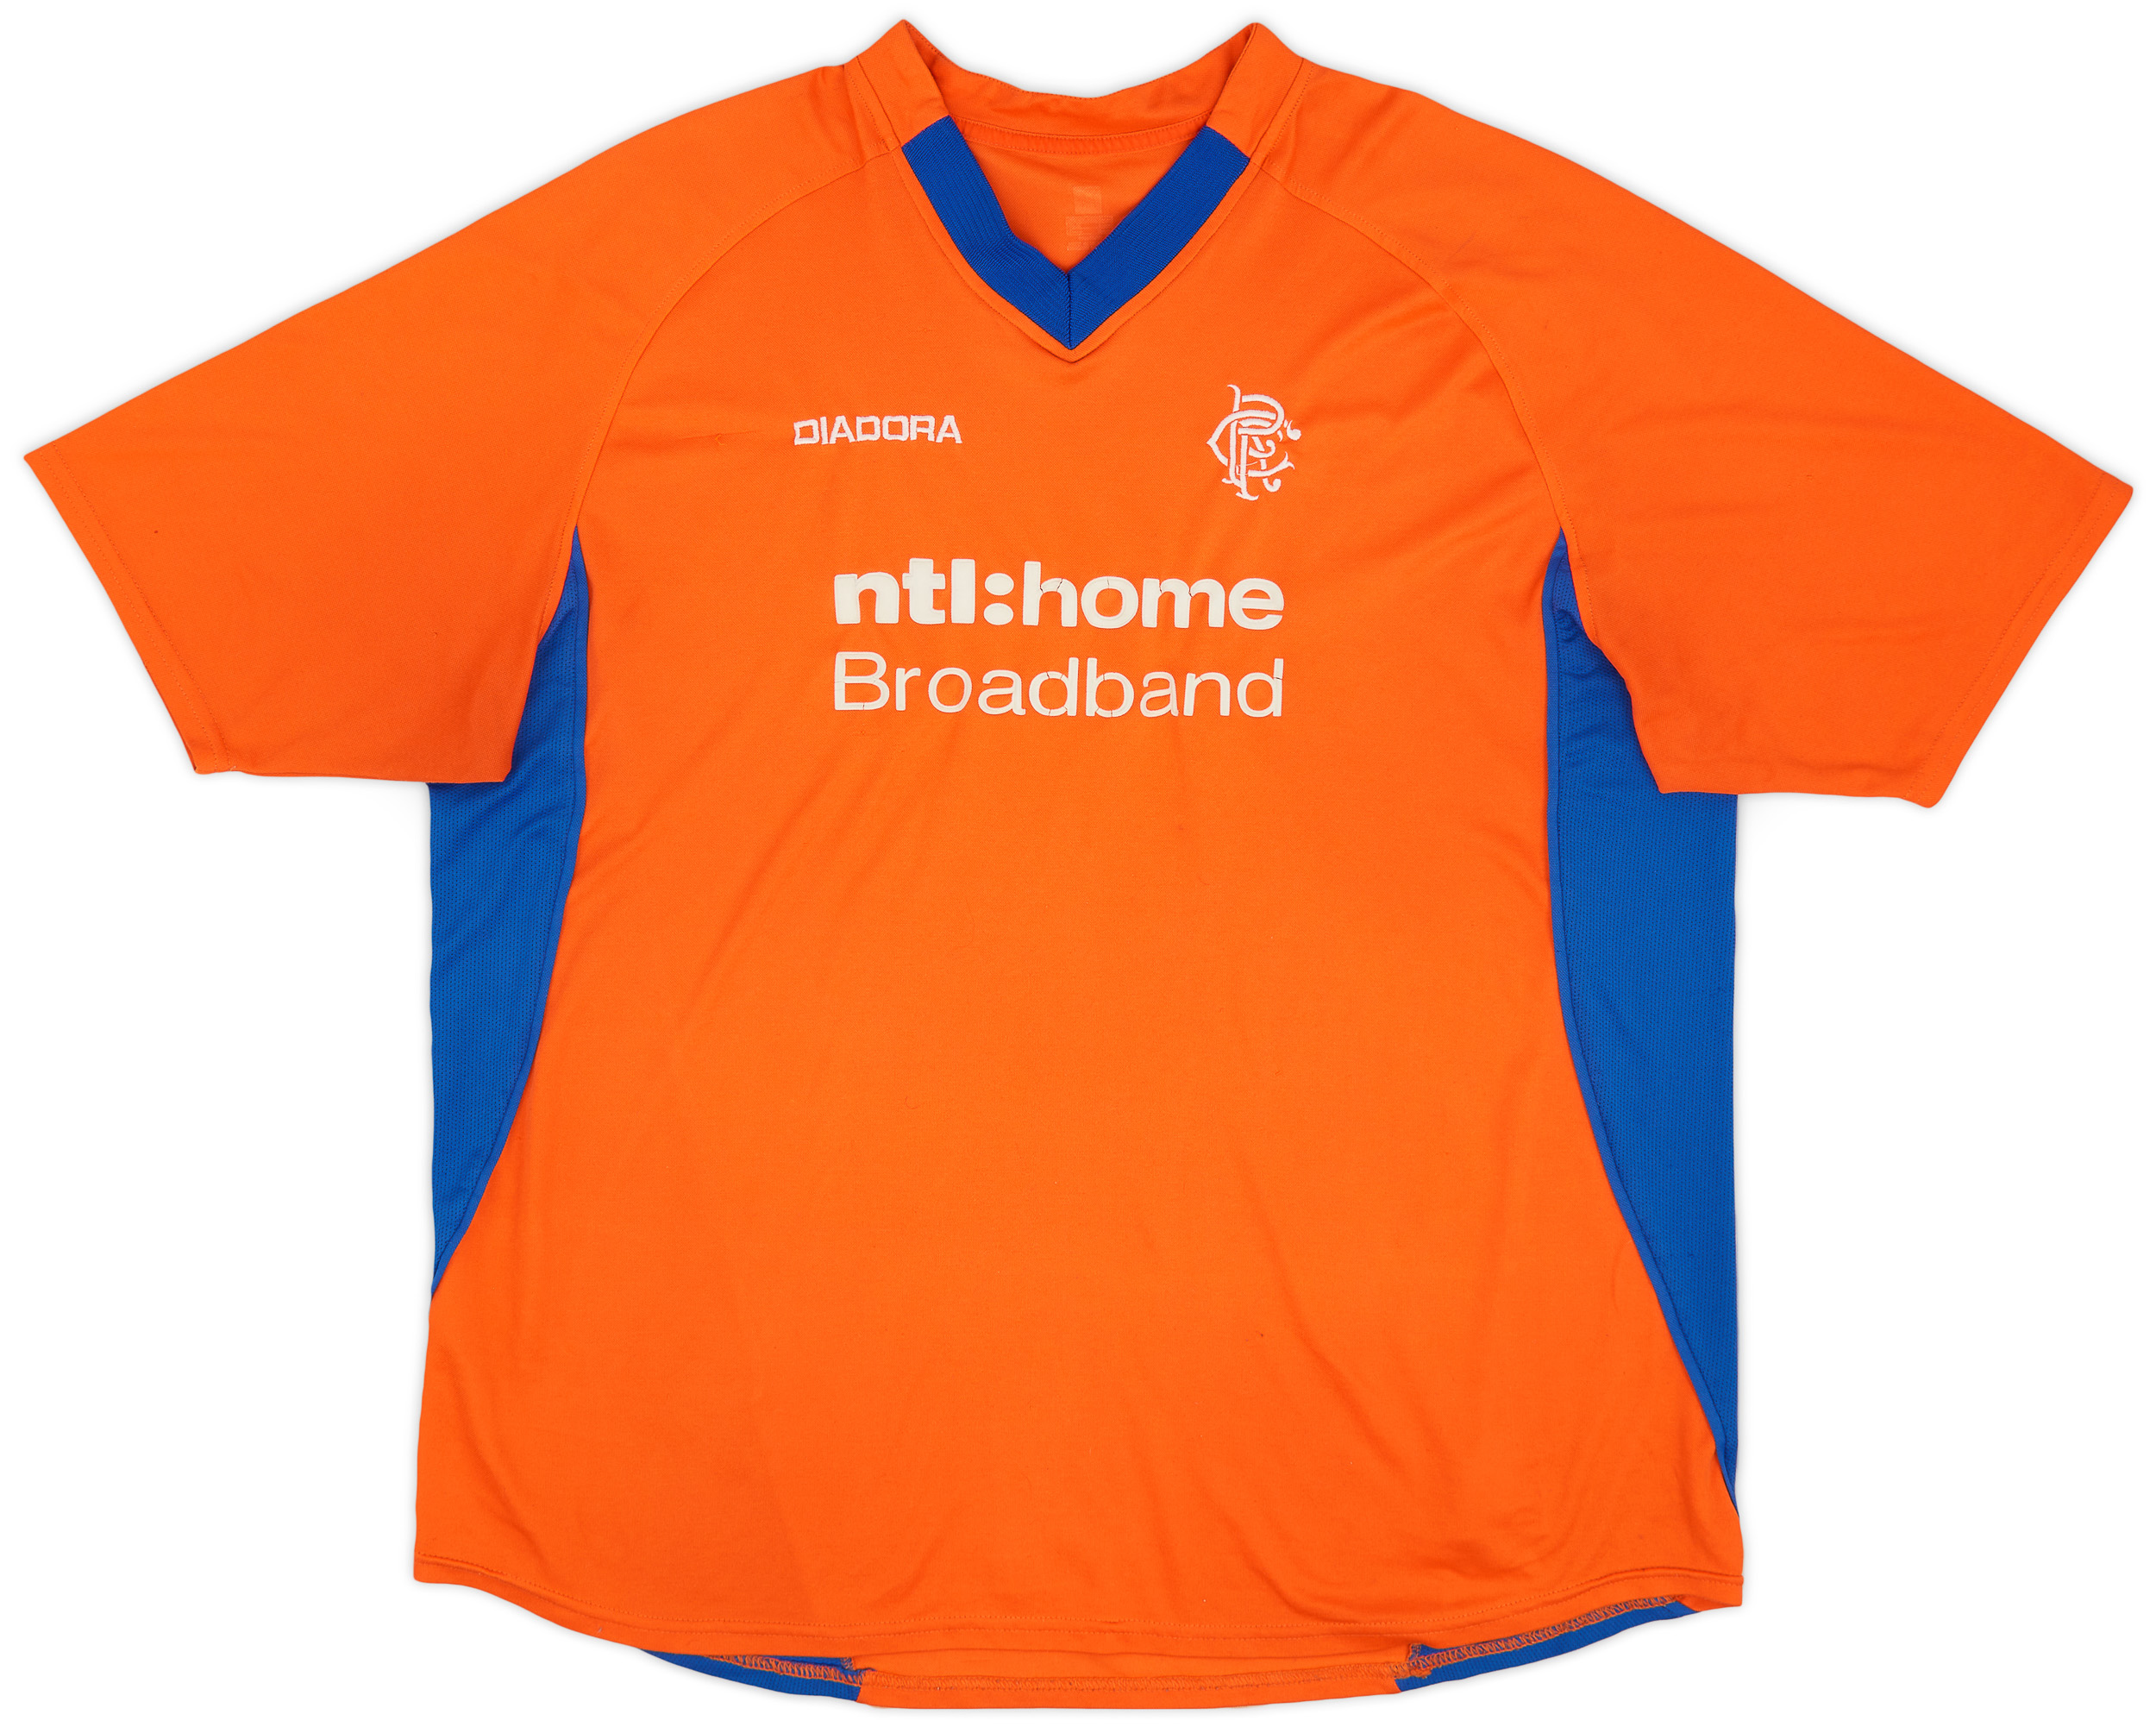 2002-03 Rangers Away Shirt - 5/10 - ()